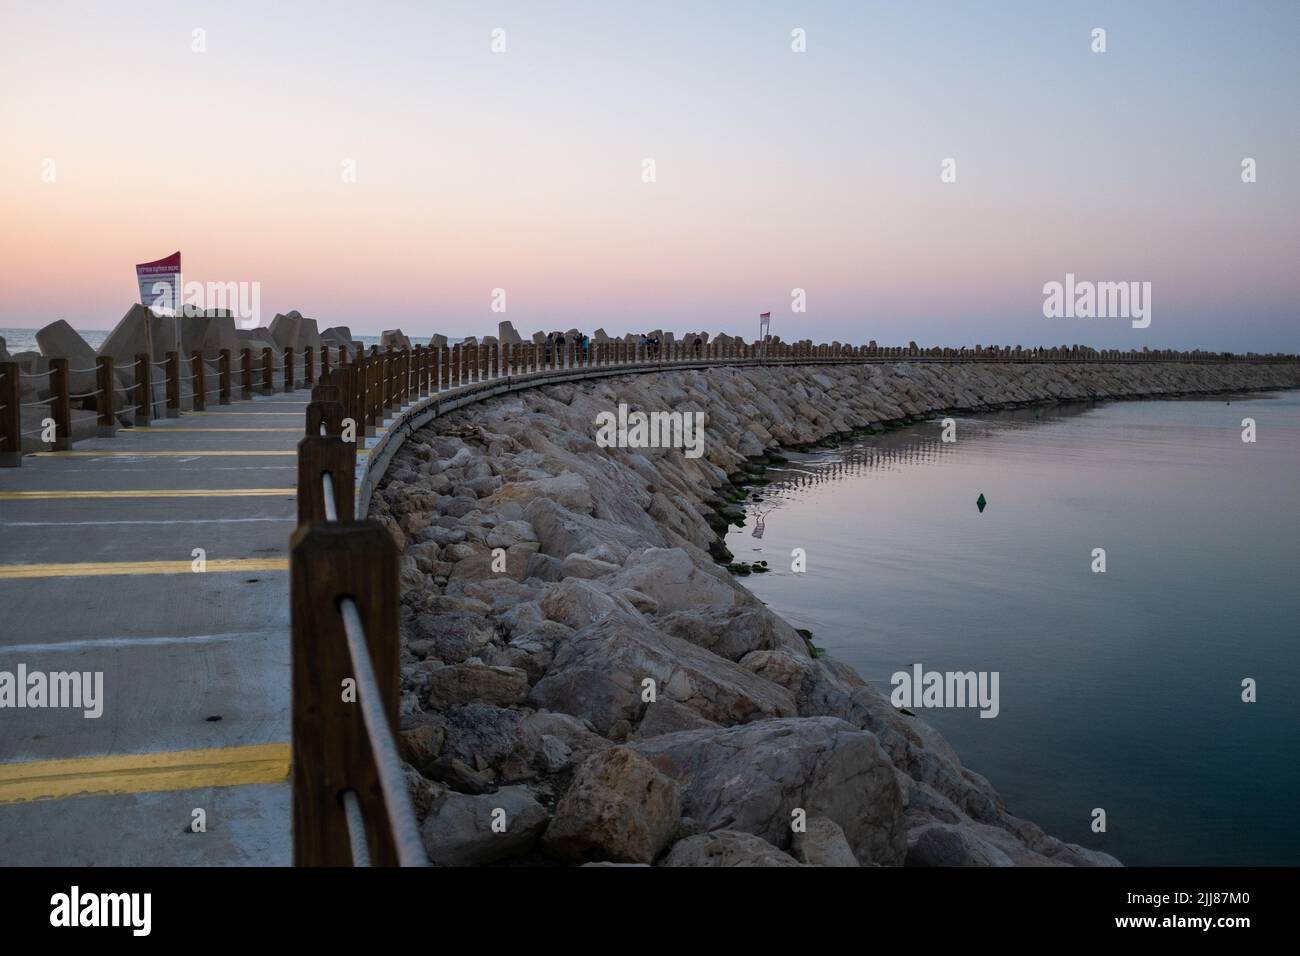 Vue sur une jetée près d'un port en bord de mer au coucher du soleil. Banque D'Images